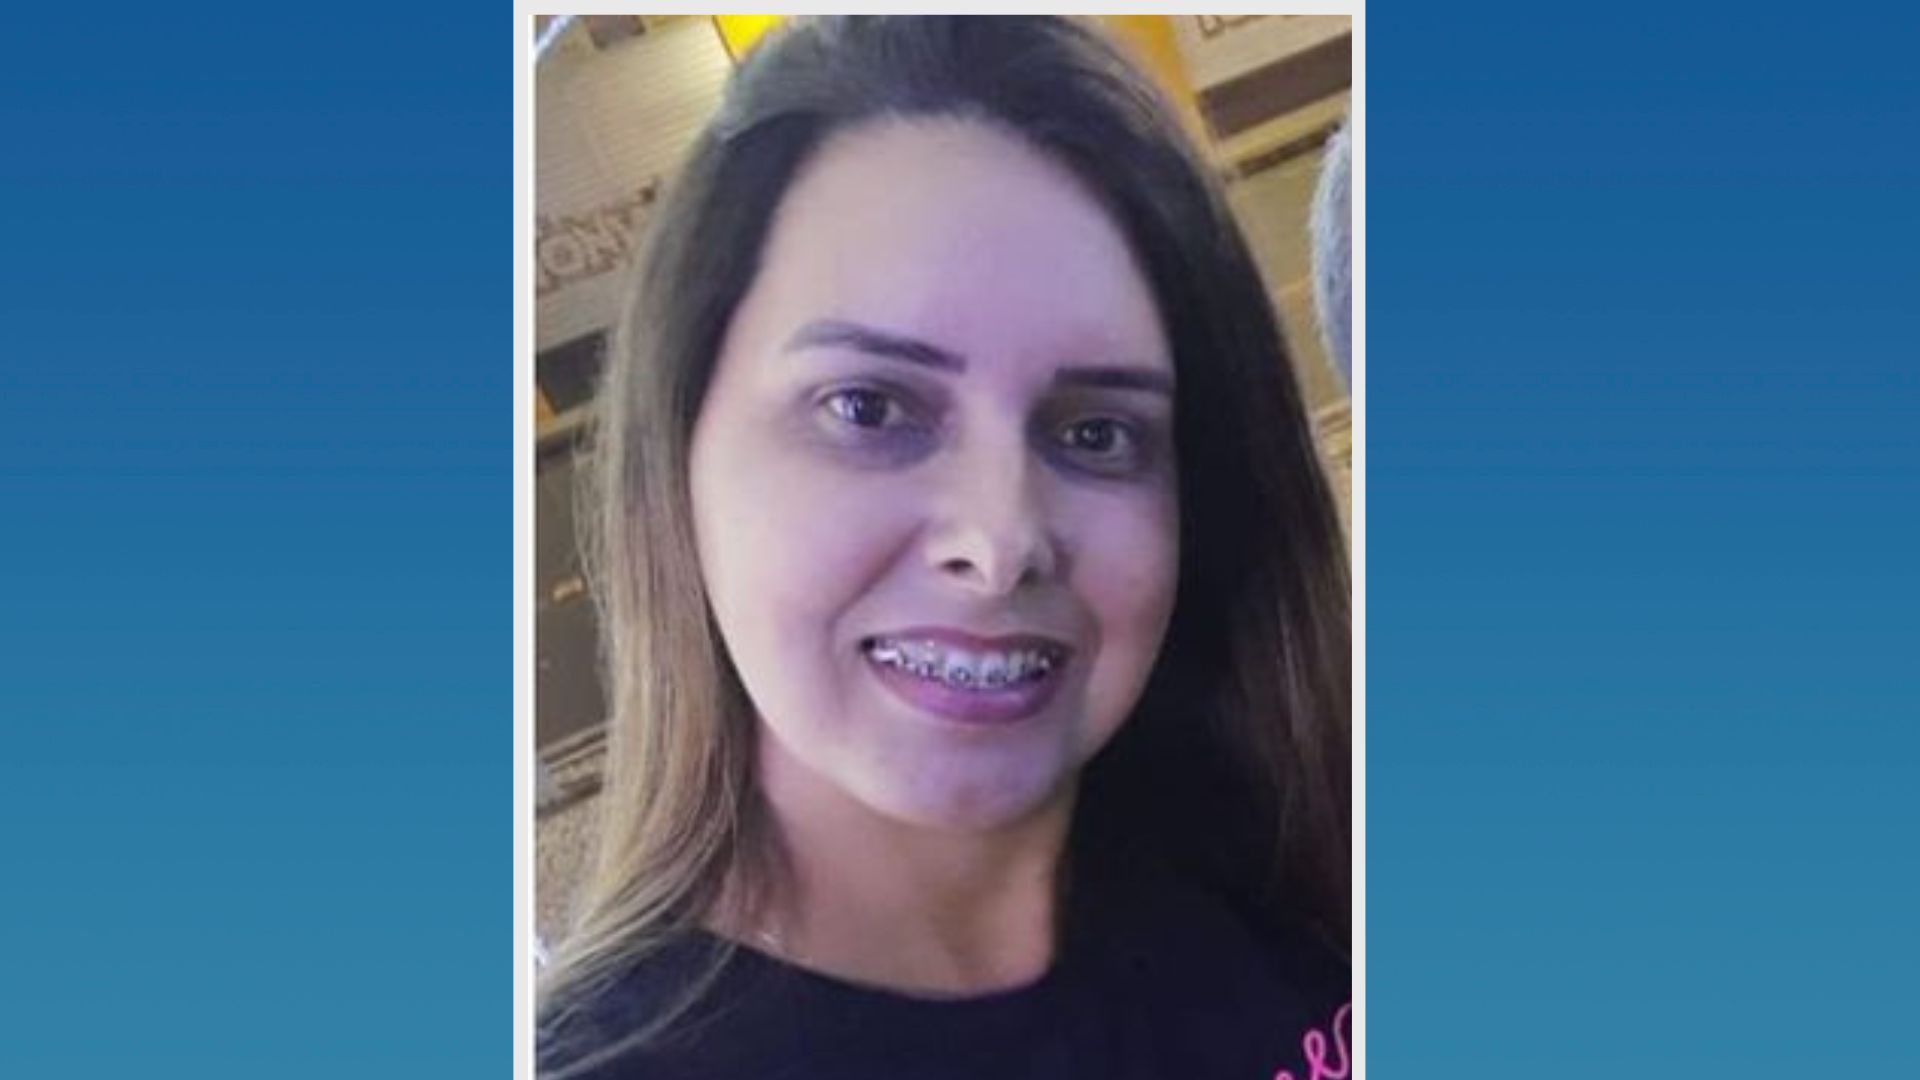 Vanuza Spala de Almeida, de 41 anos, foi encontrada morta com um tiro no peito no banheiro de casa; ela era esposa de Celio Martins Morales, de 56 anos – que se apresentou à polícia com advogado